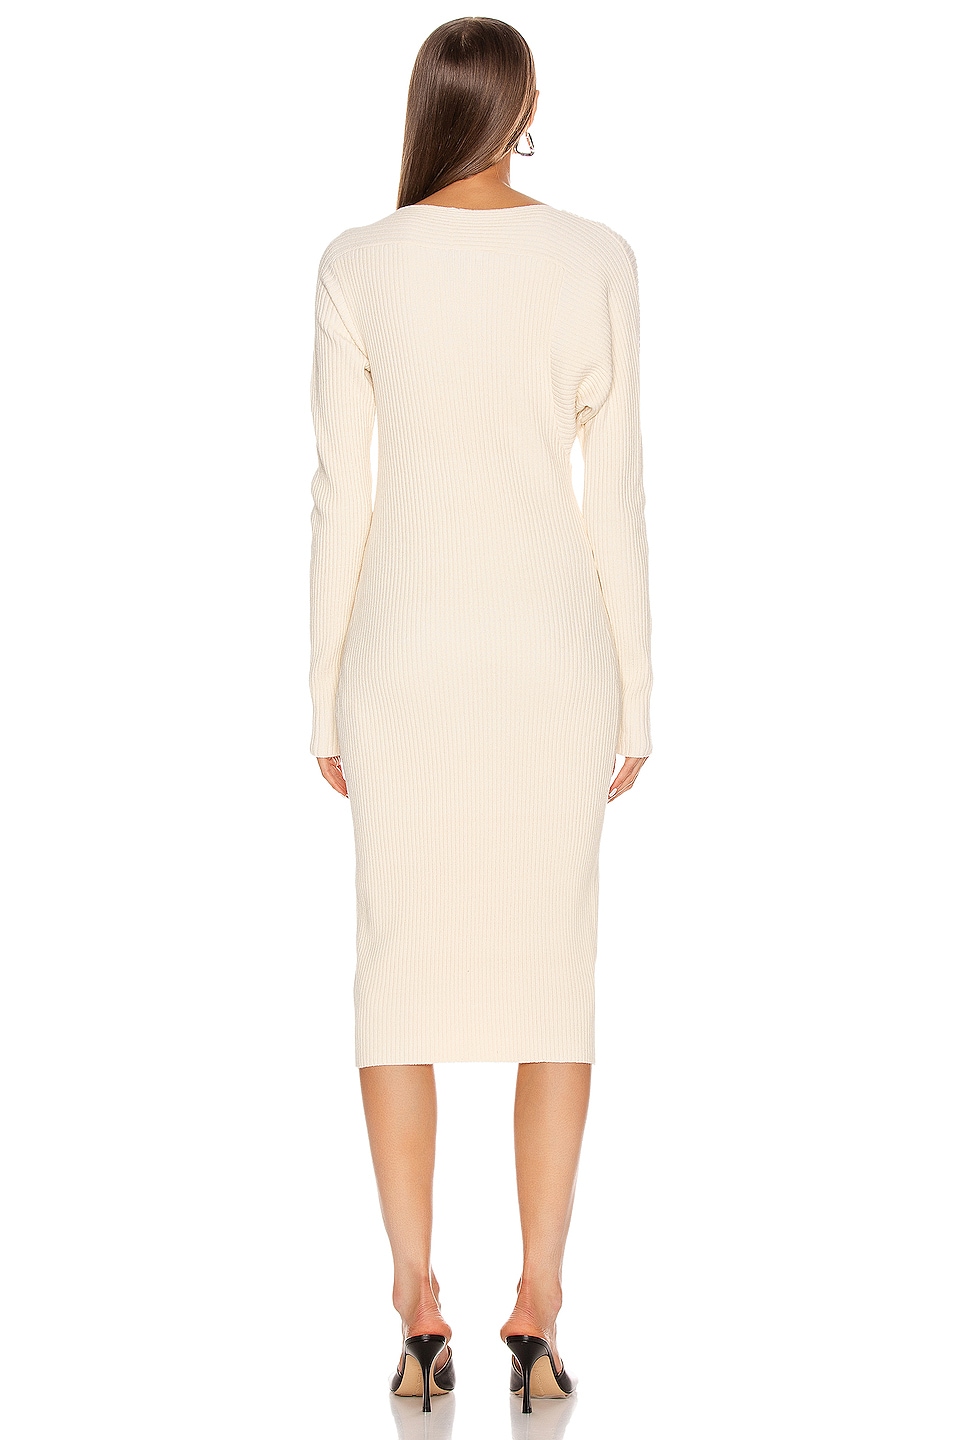 Bottega Veneta Knit Midi Dress in Off White | FWRD